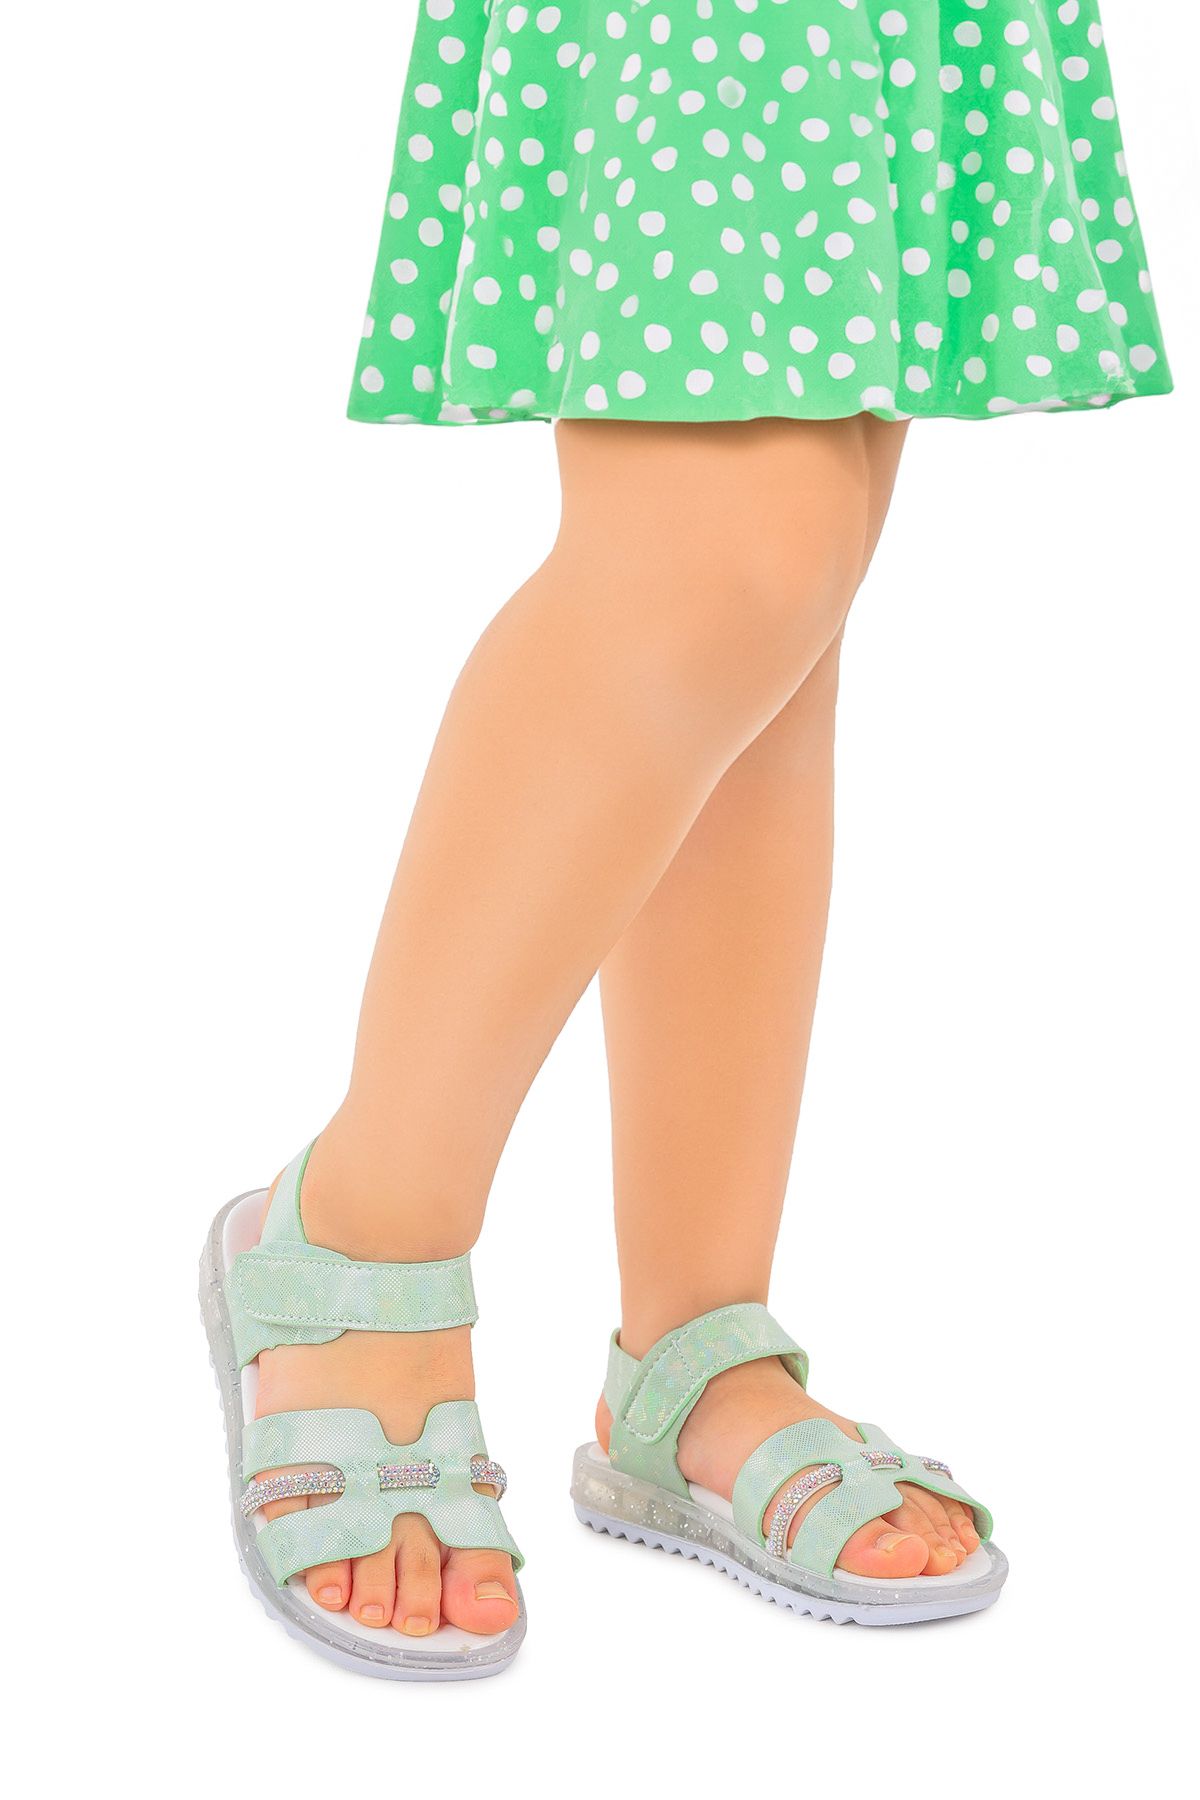 Kiko Kids Kız Çocuk Sandalet Arz 2345